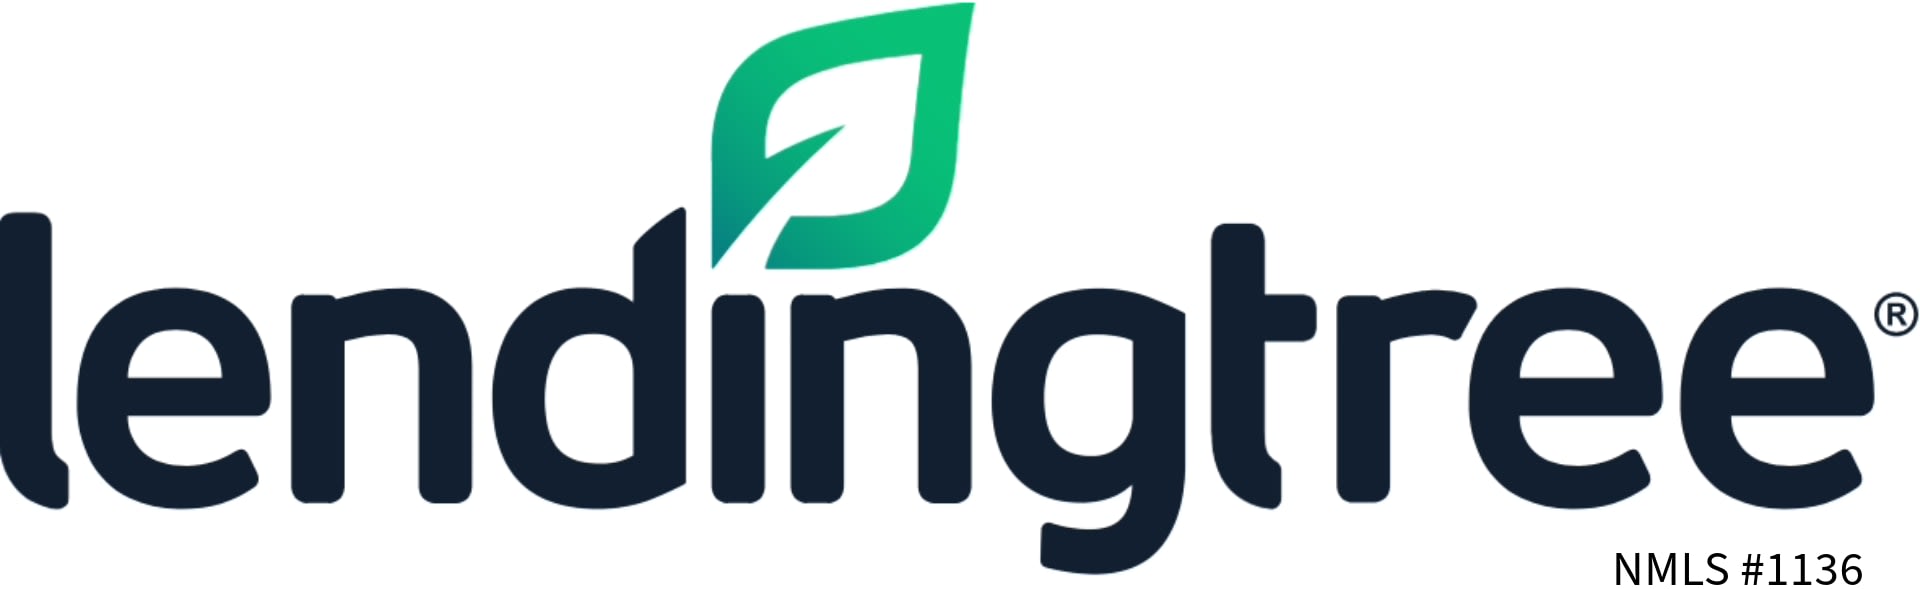 lendingtree logo image